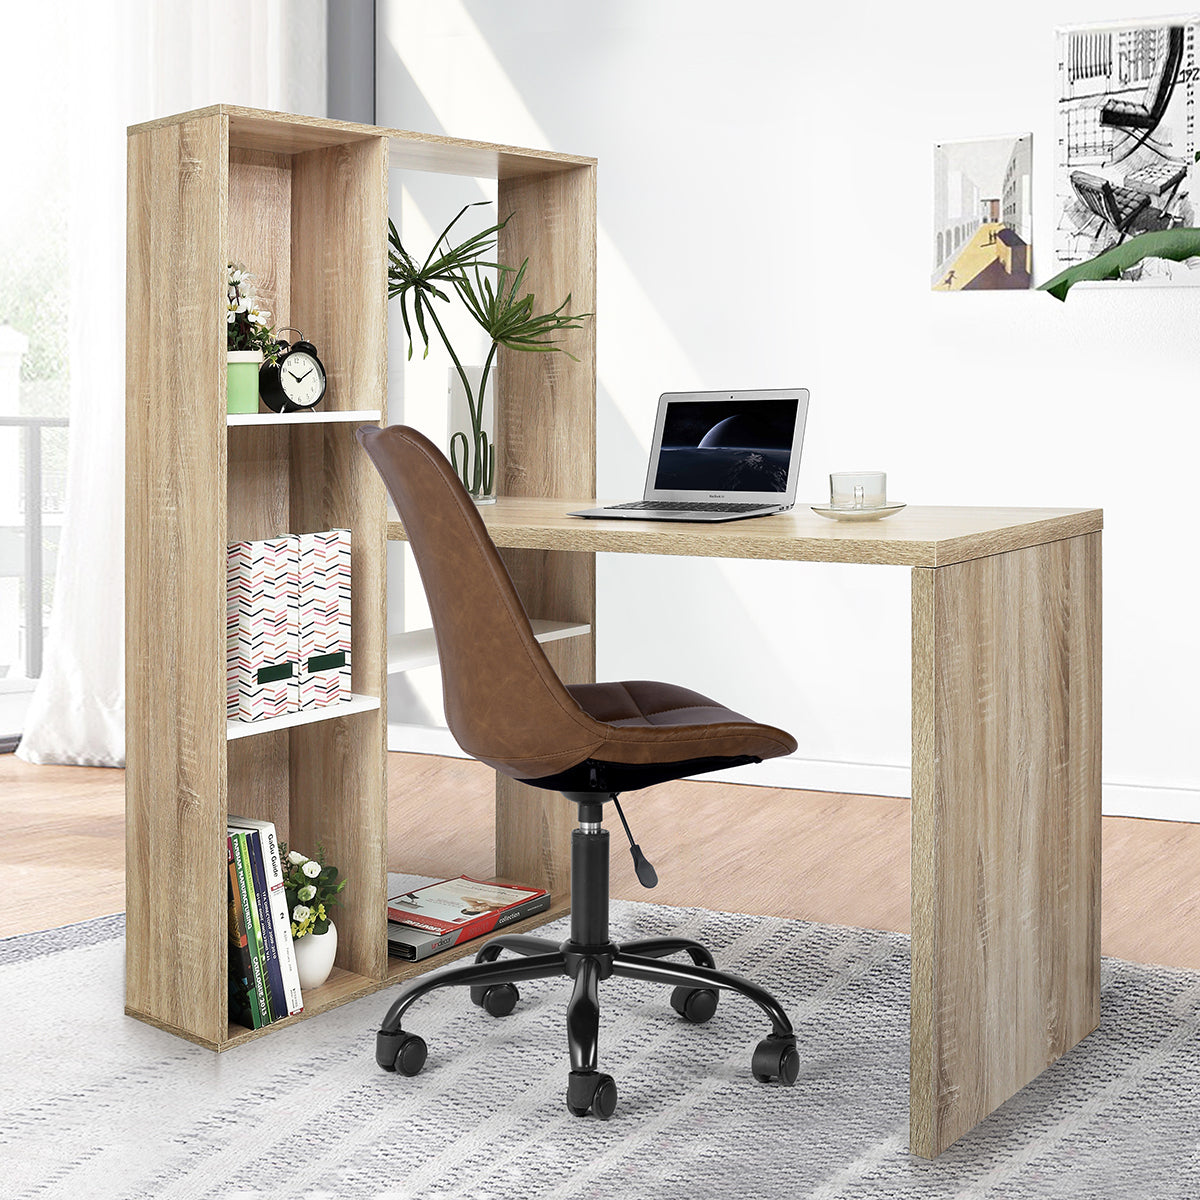 2 in 1 Computer Desk/ L-shape Desktop with Shelves